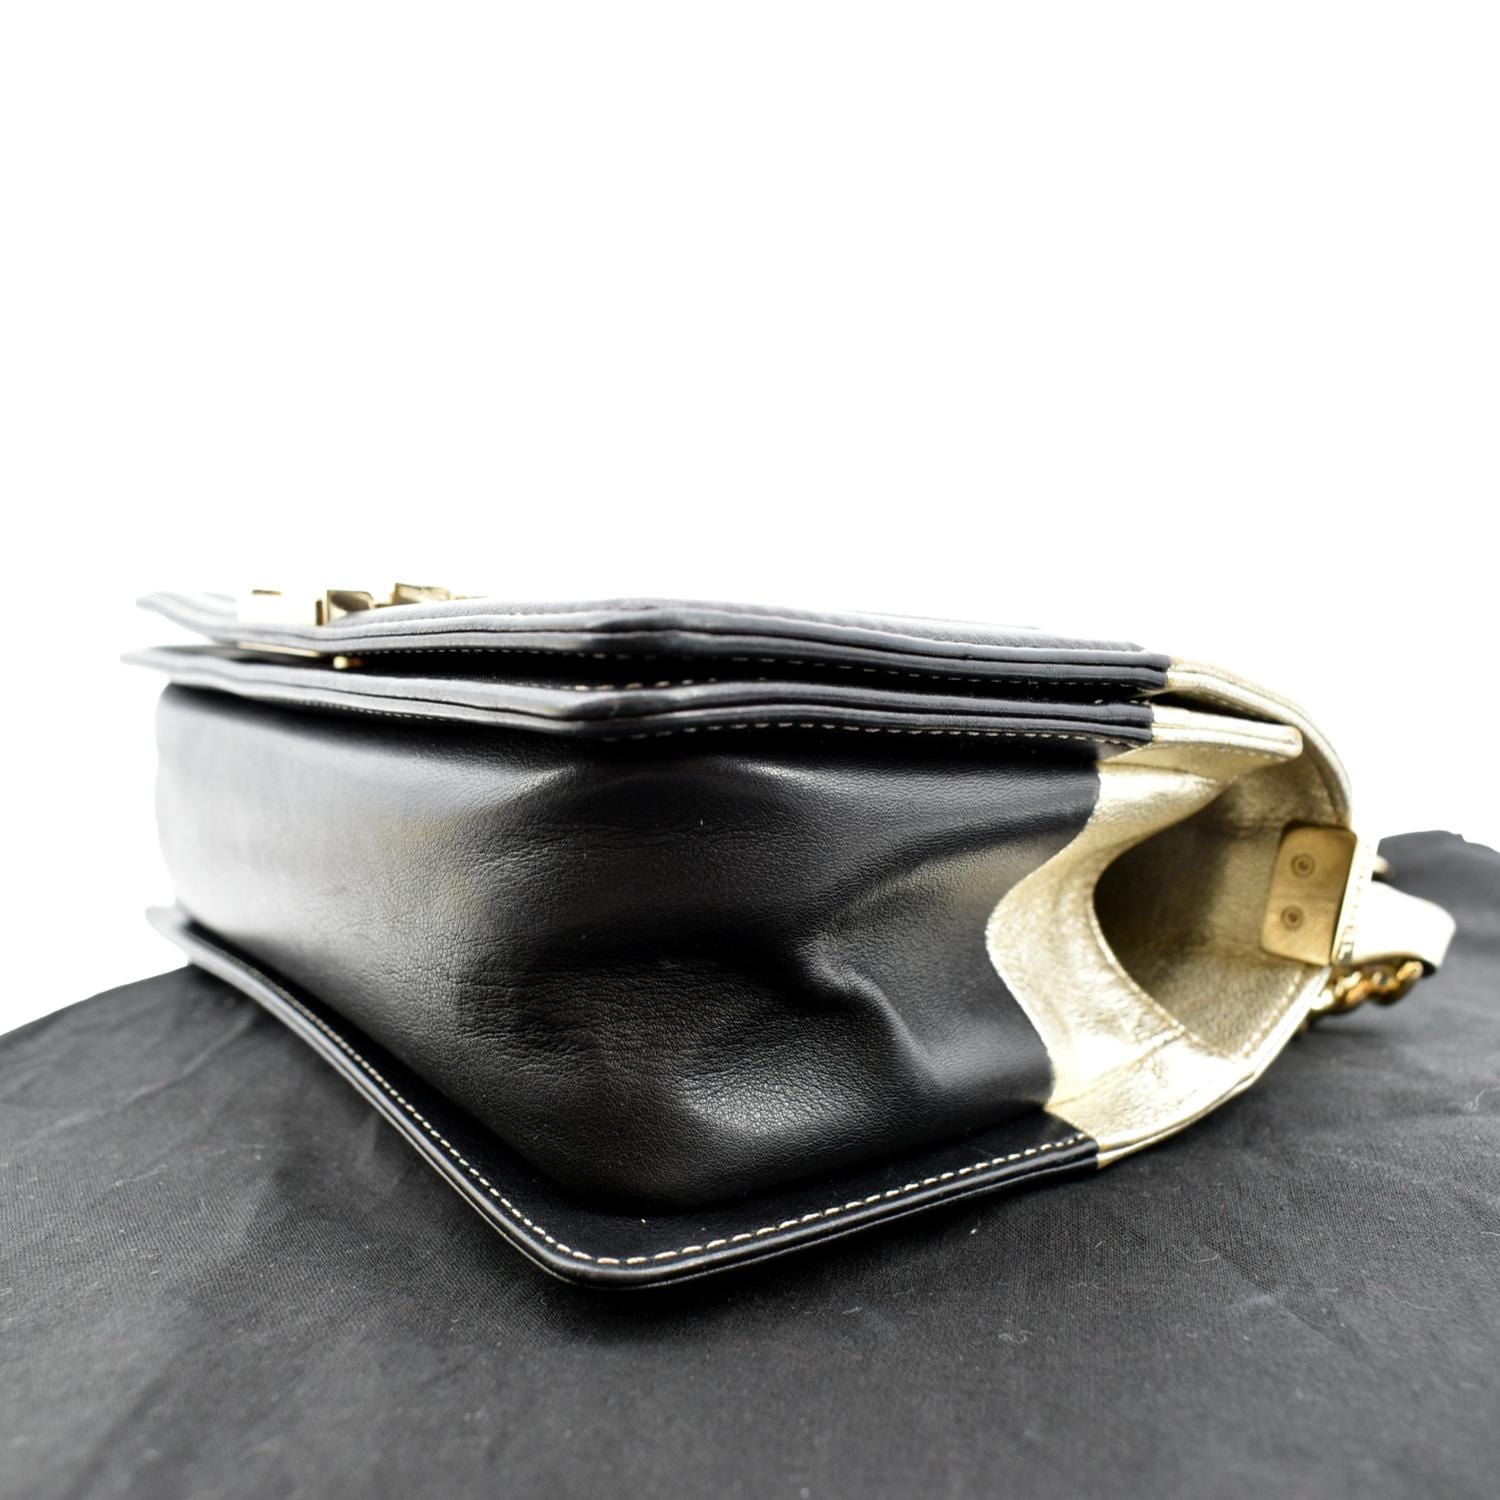 Chanel Boy Foldover Clutch - Burgundy Clutches, Handbags